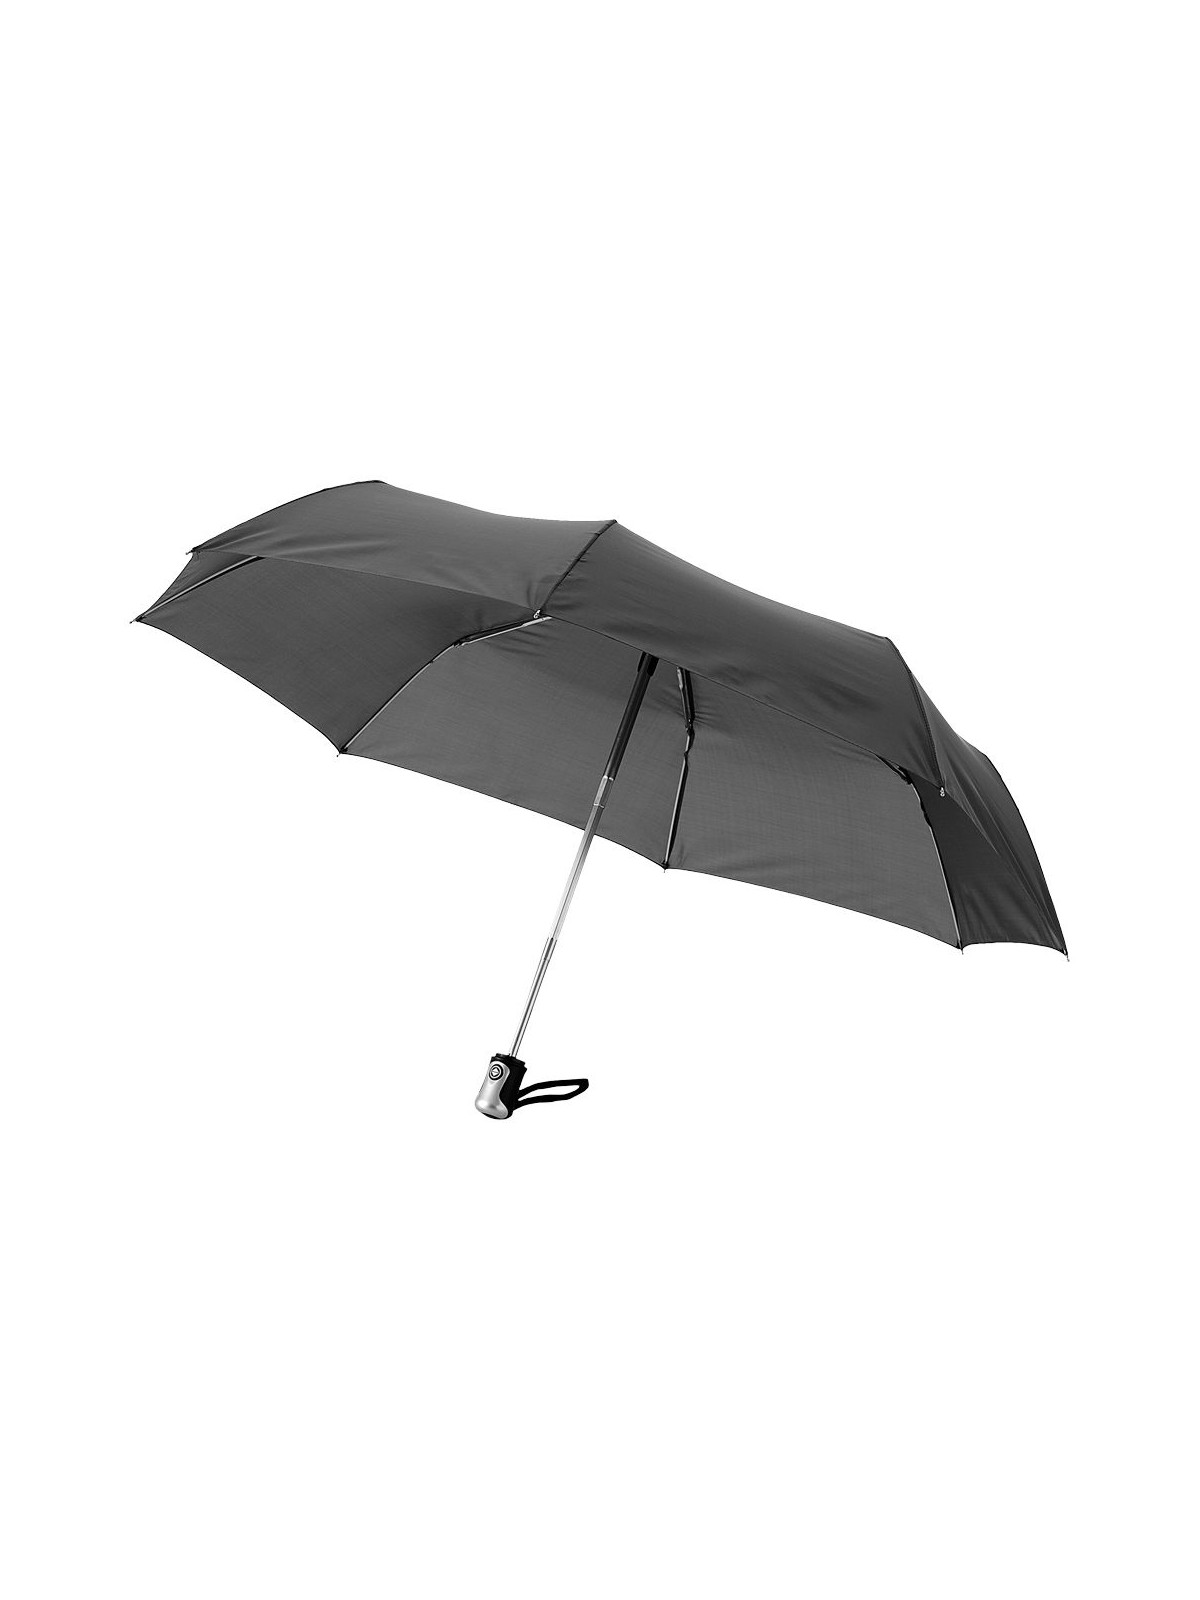 29-084 Parapluie pliant automatique Sally personnalisé